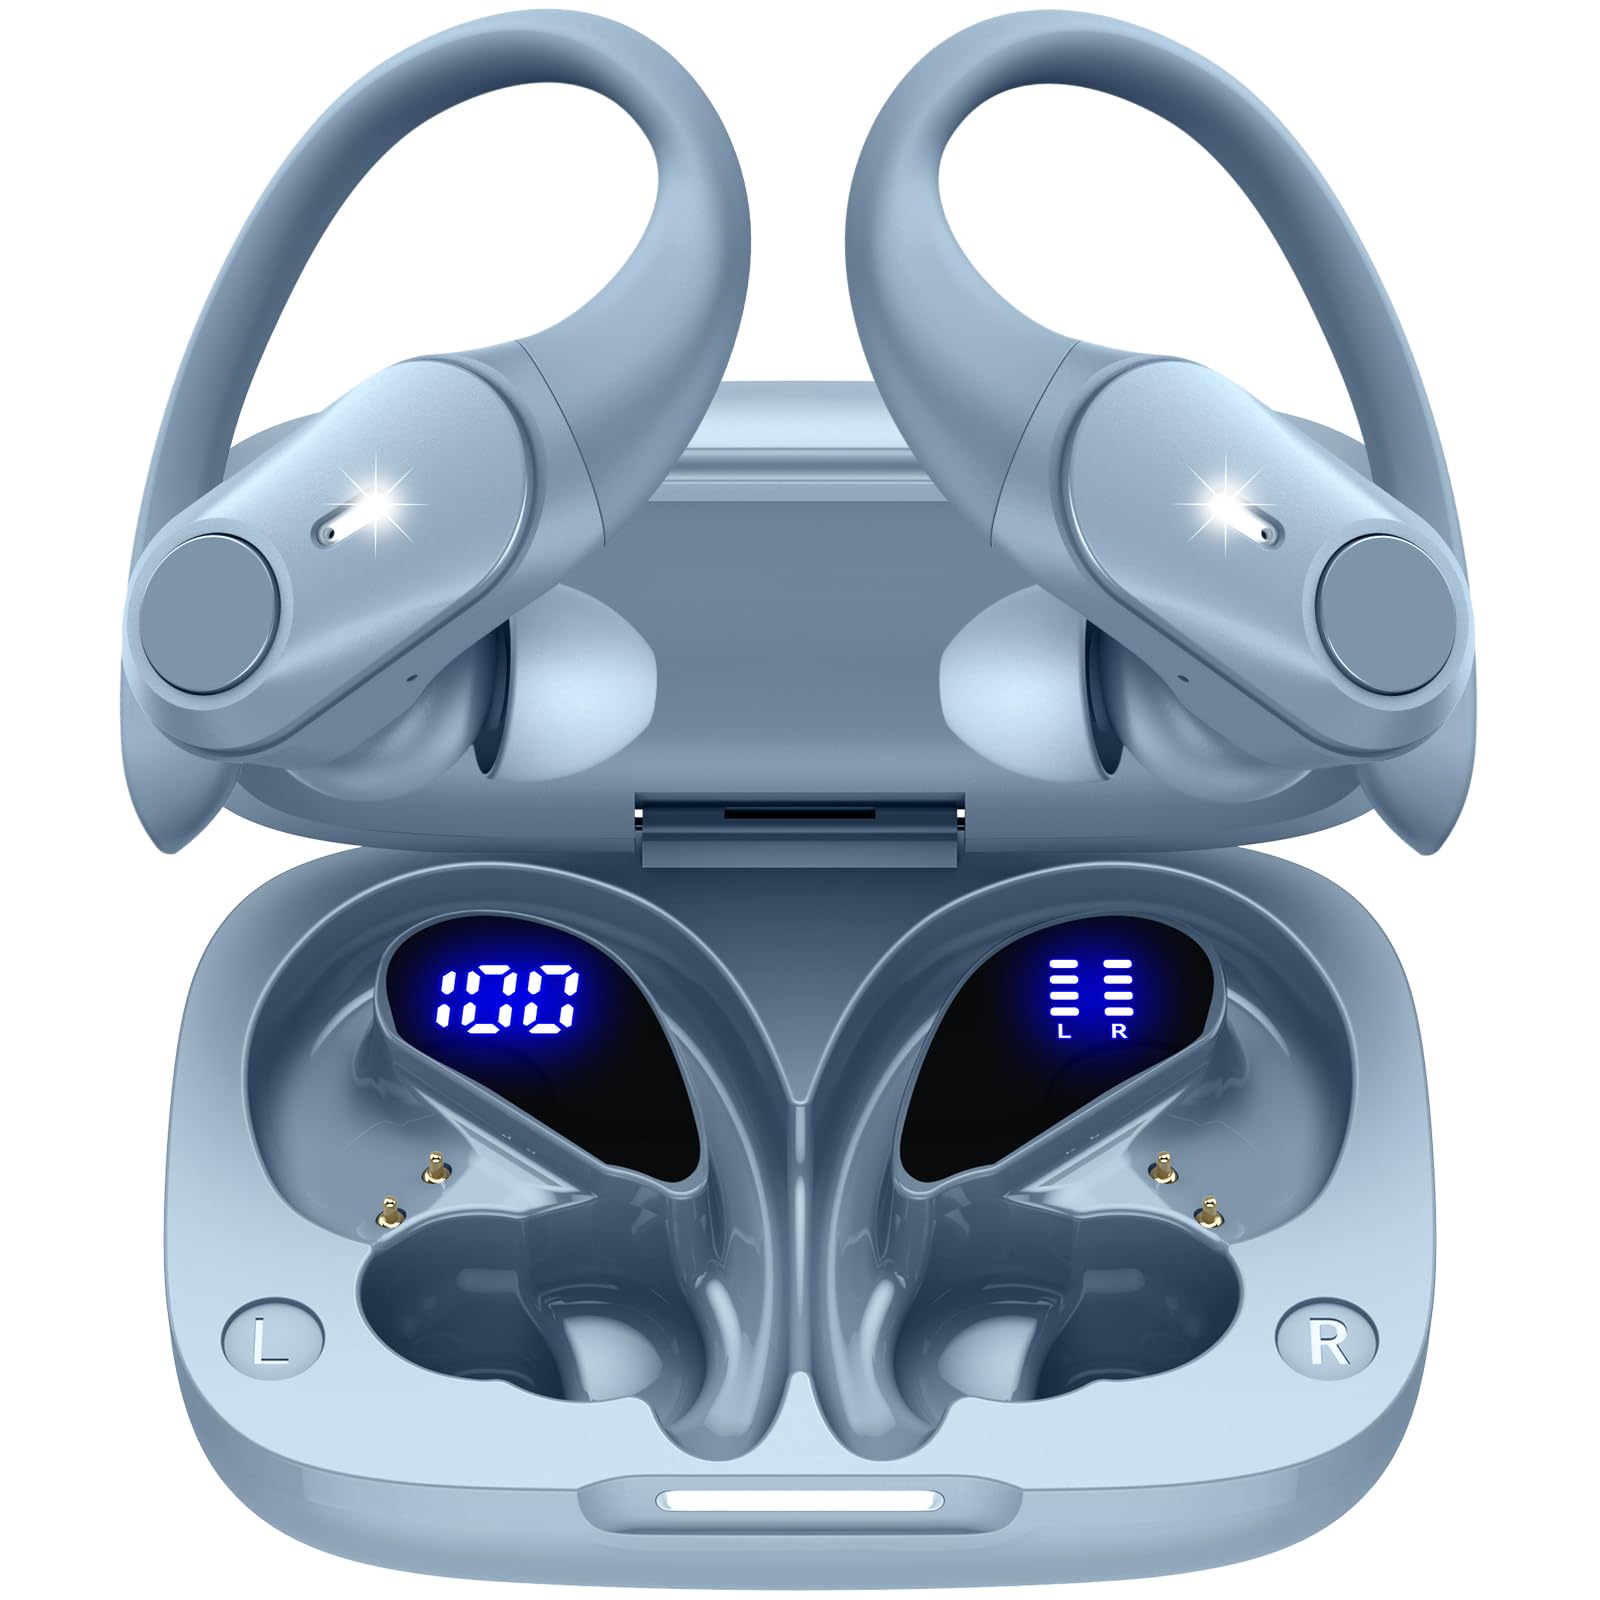 イヤホン bluetooth 耳掛け式イヤホン ワイヤレスイヤホン bluetooth イヤホン 最大40時間再生 ブルートゥースイヤホン Hi-Fi音質 AAC対